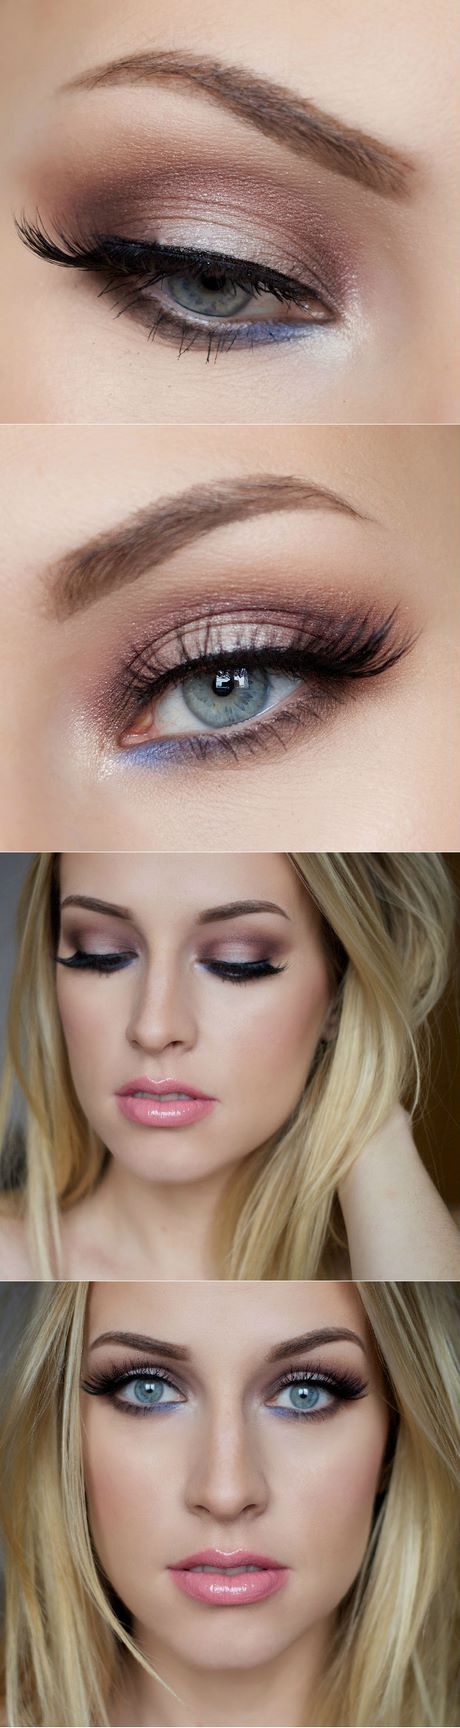 make-eyes-bigger-makeup-tutorial-02_12 Make eyes bigger makeup tutorial